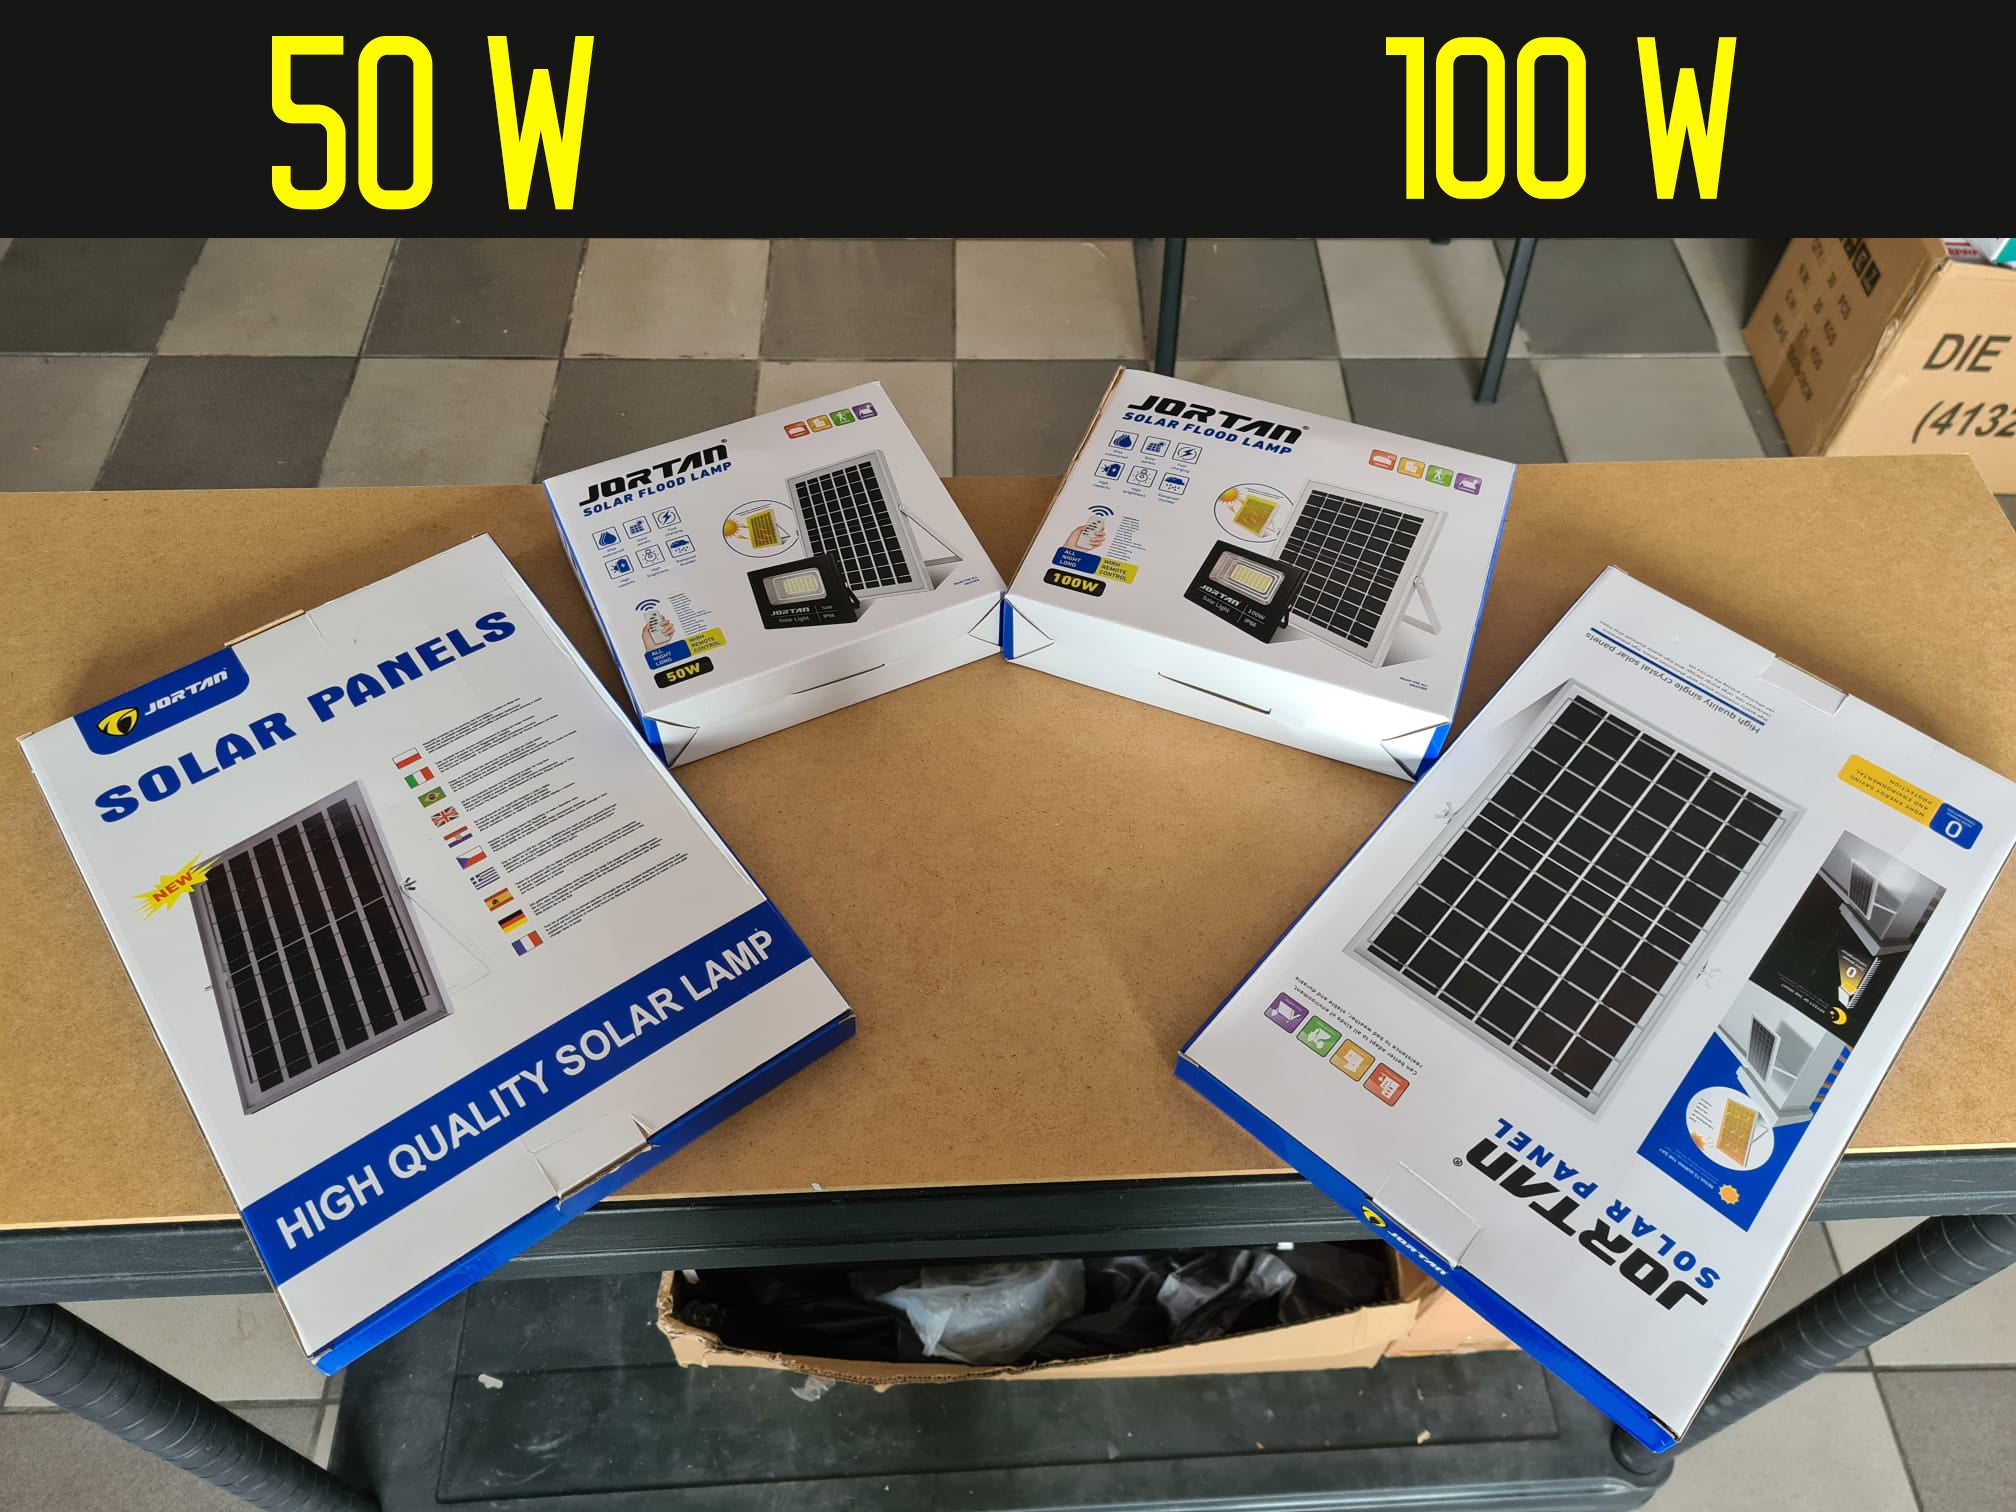 Proiector Solar Jortan 50W, Lampa cu Incarcare Solara si Panou Solar separat